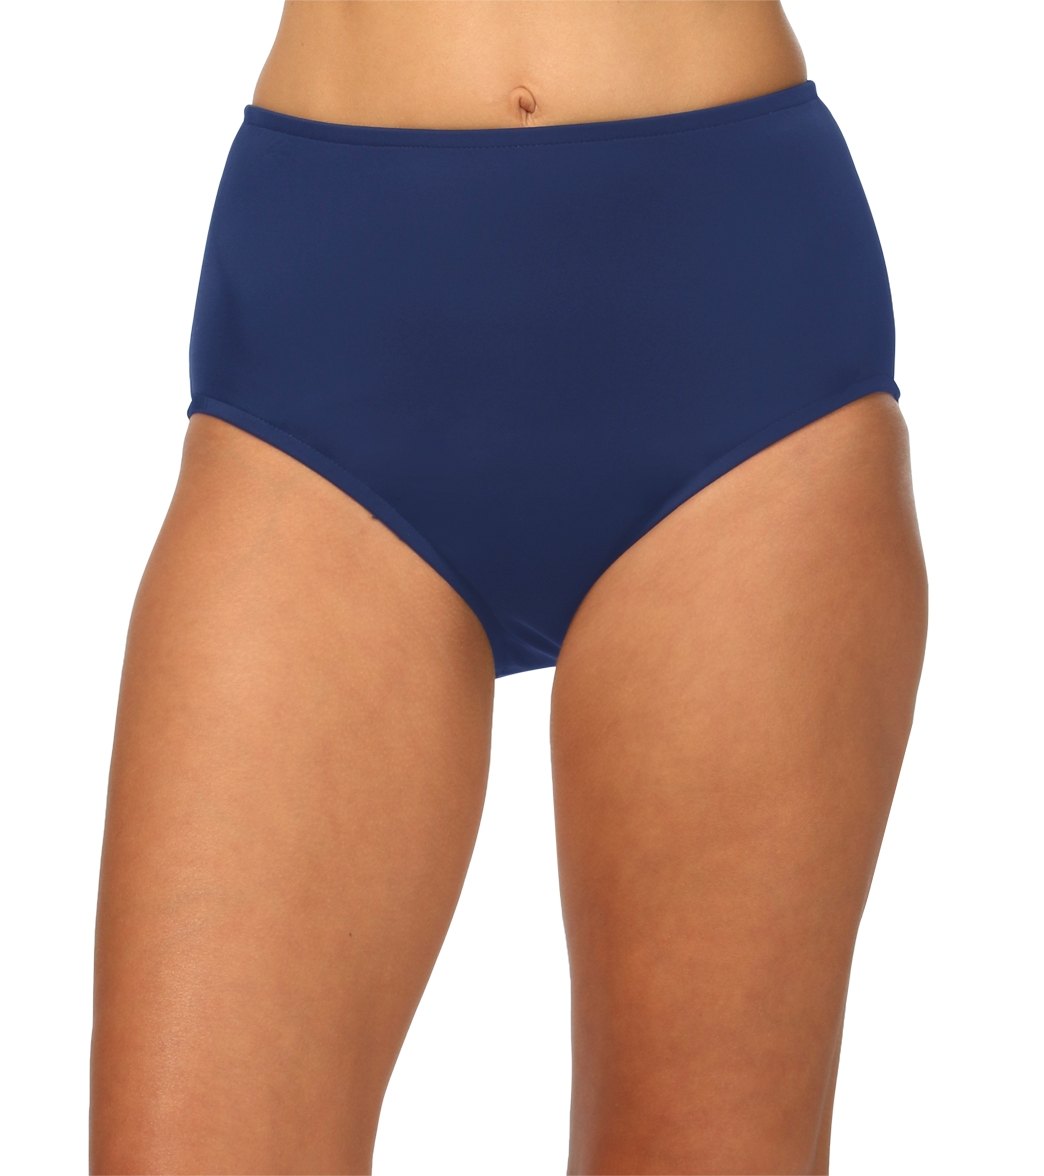 Maxine Solid Full Bikini Bottom - Navy 18 Elastane/Lycra®/Nylon - Swimoutlet.com